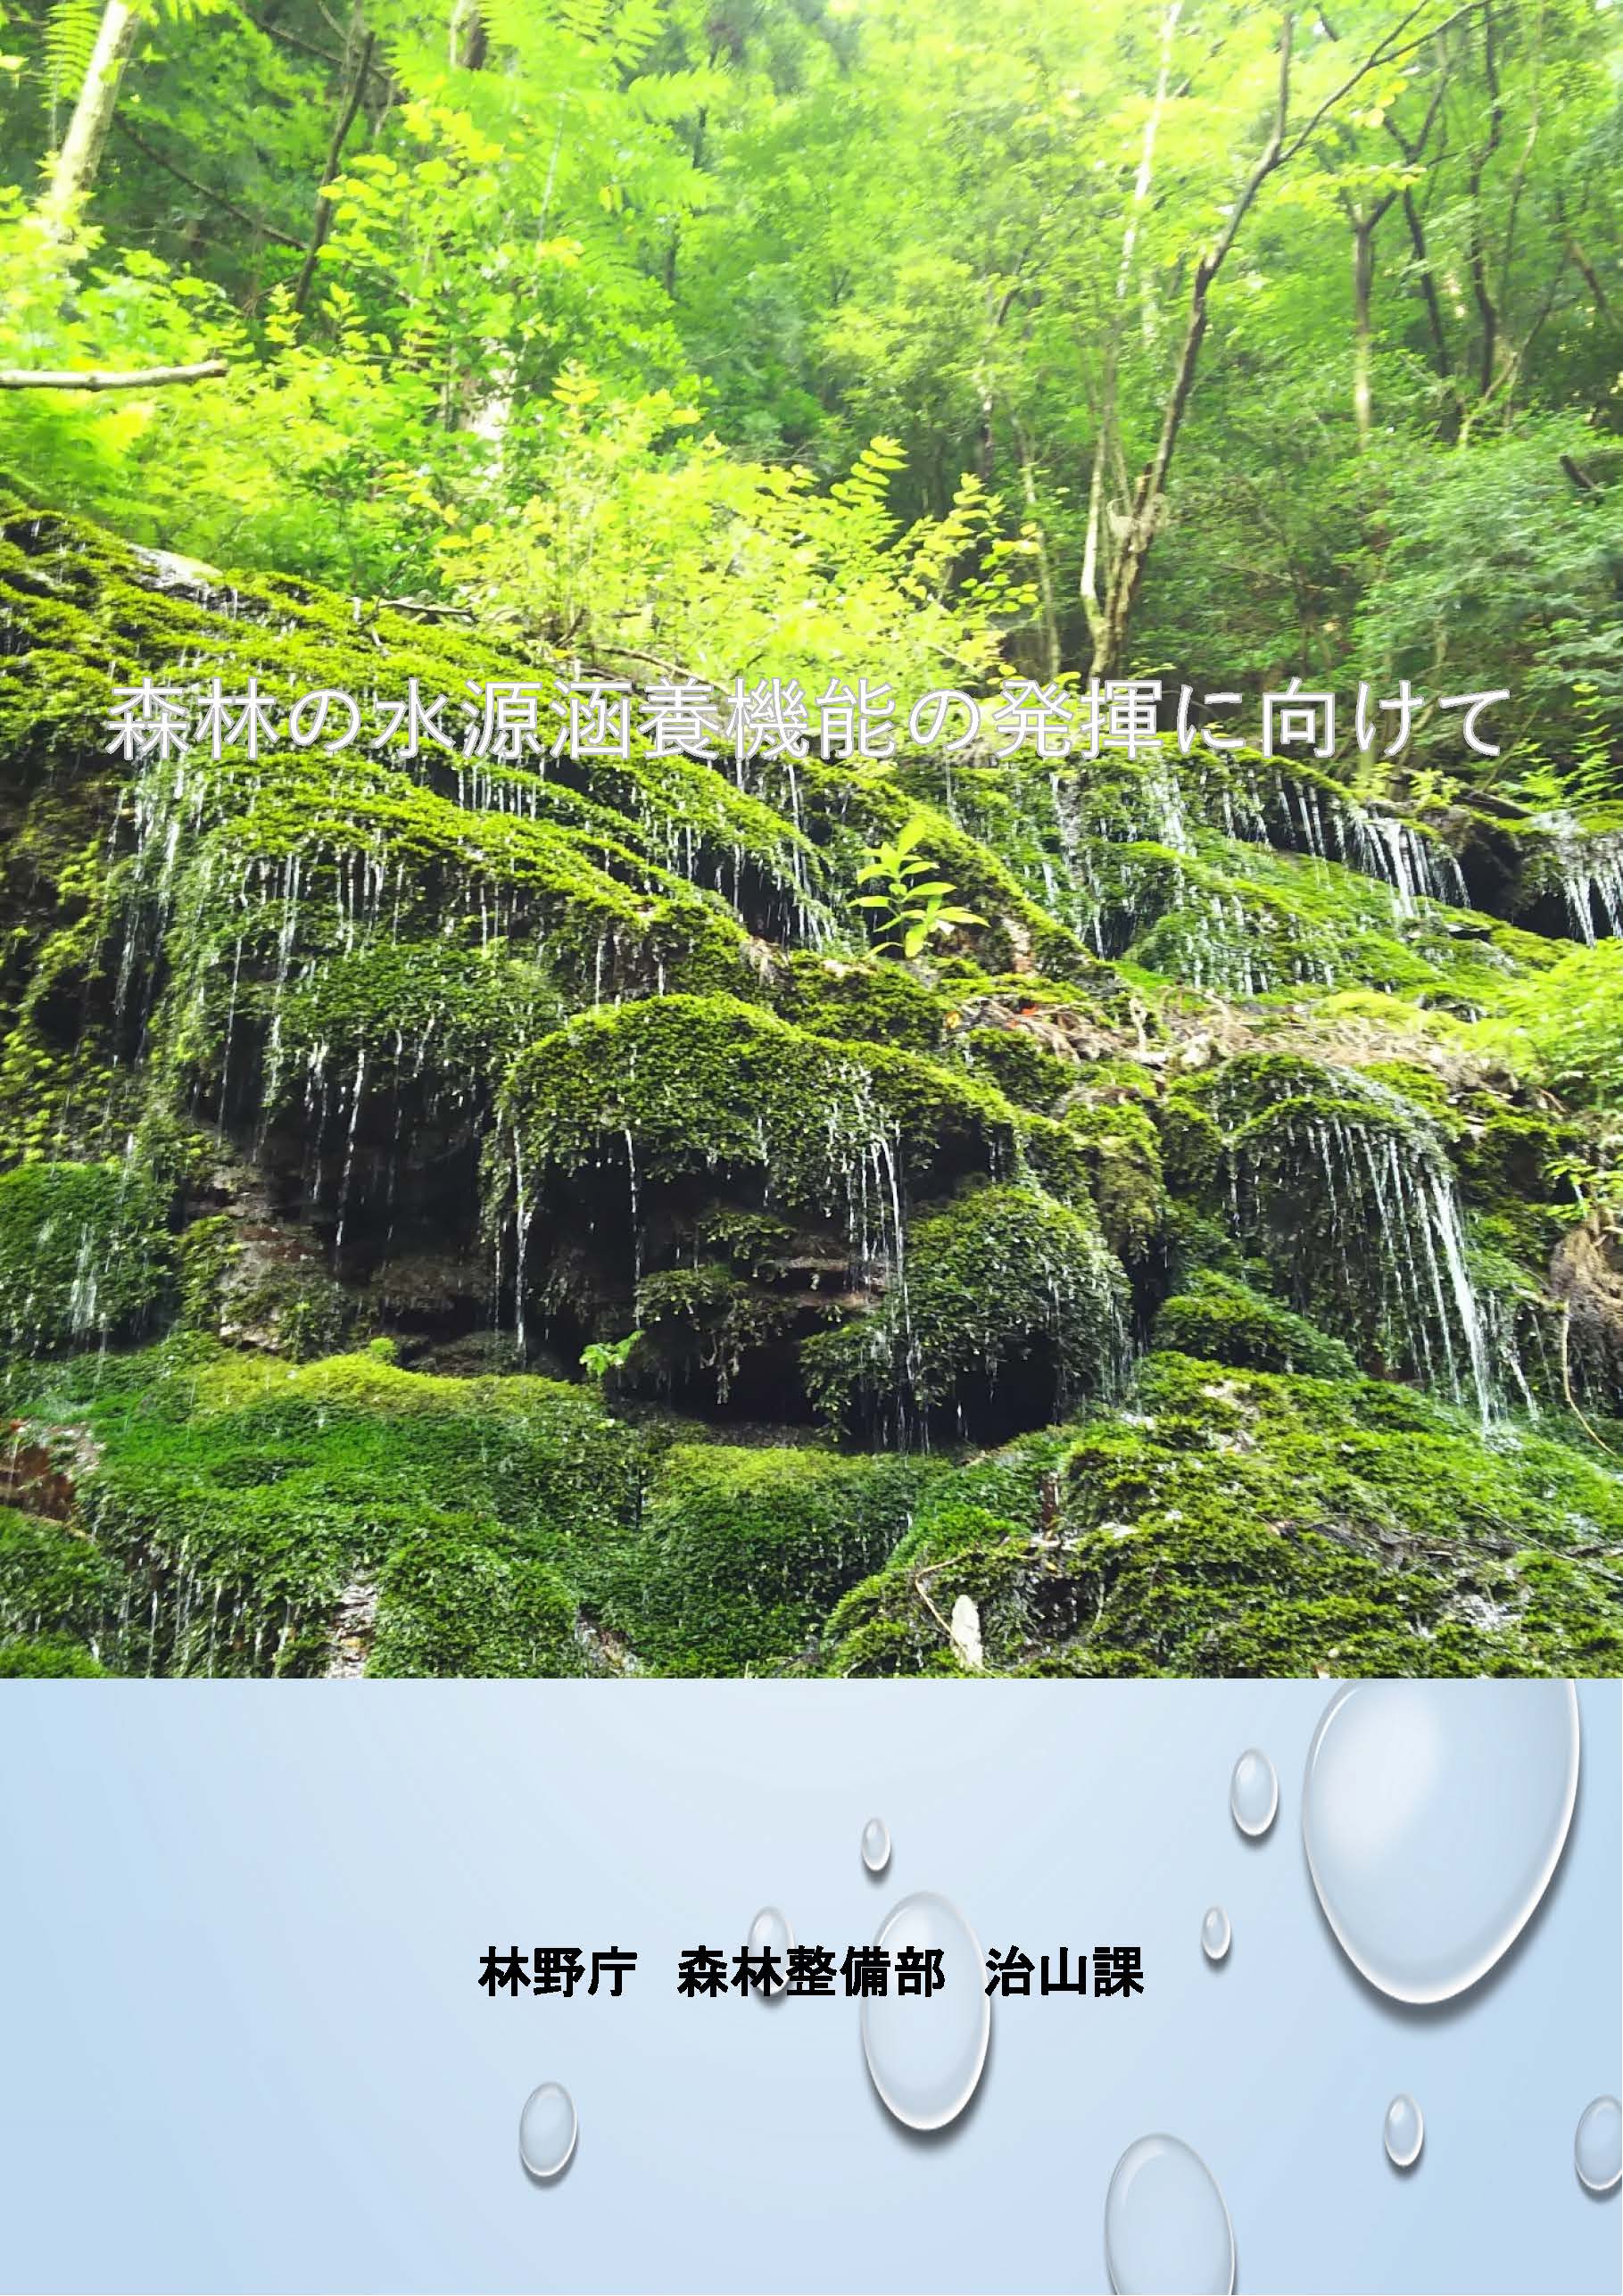 パンフレット「森林の水源涵養機能の発揮に向けて」を公開しました